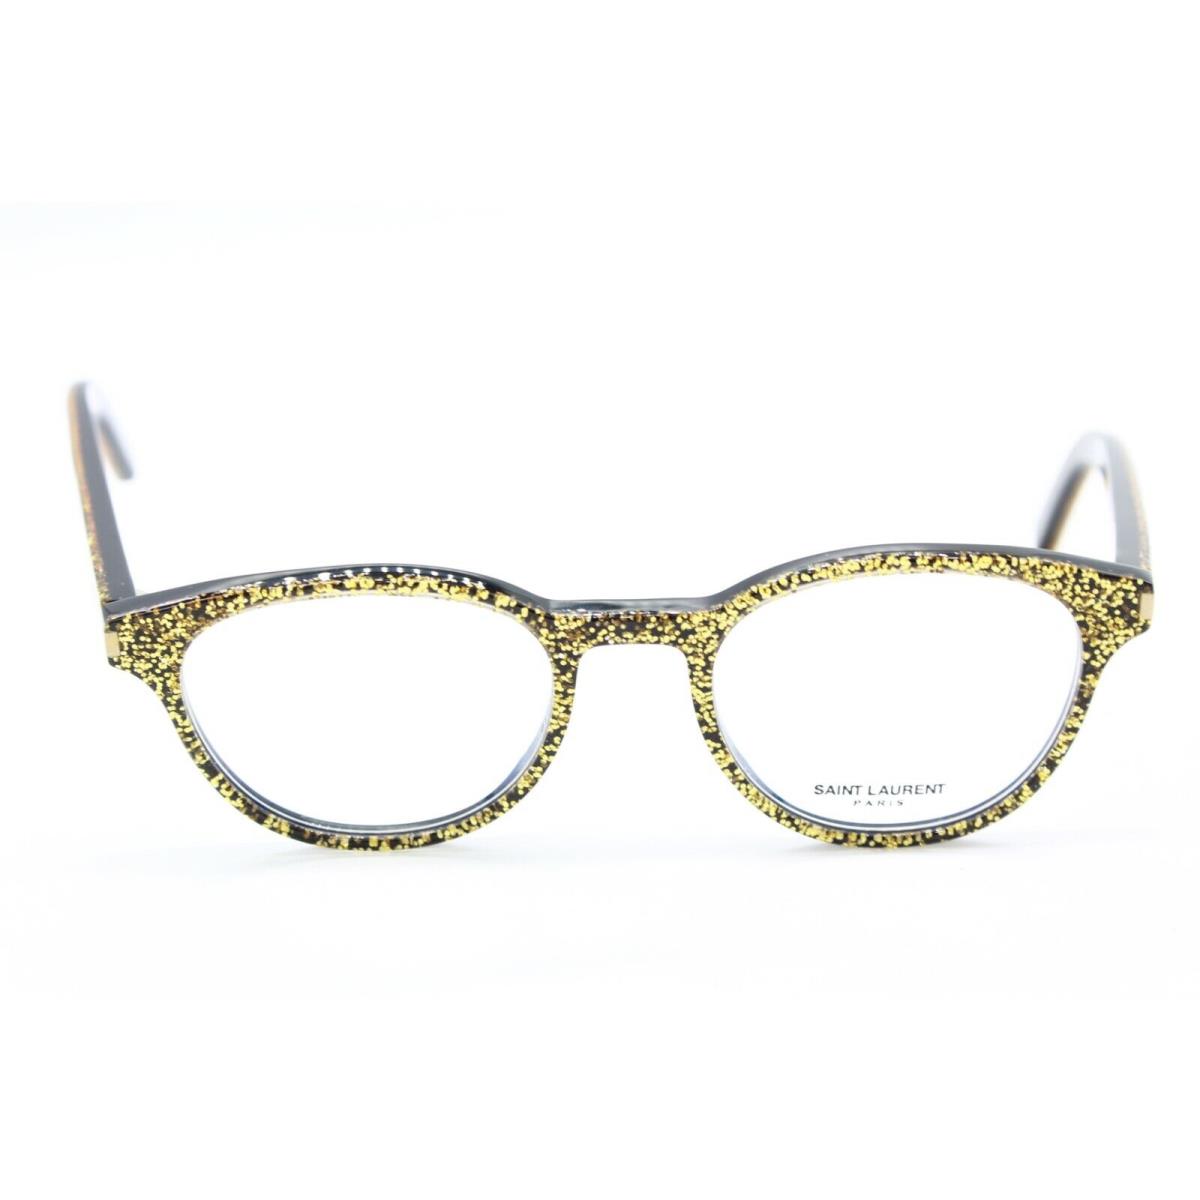 Yves Saint Laurent eyeglasses CLASSIC - BLACK GOLD Frame 0